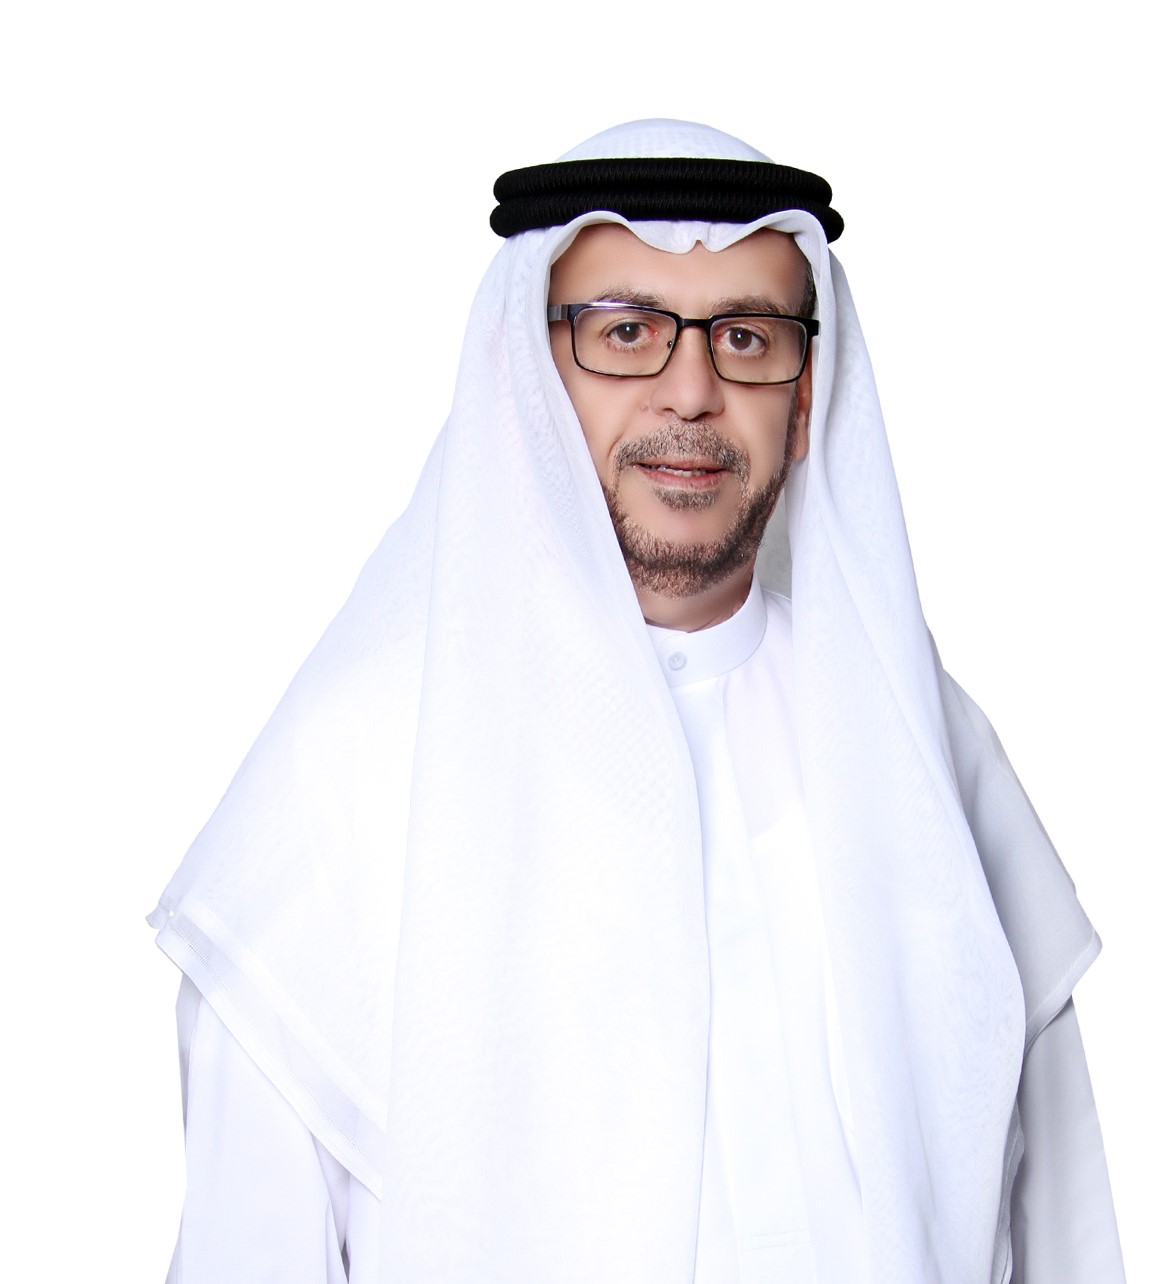 عبدالله المويجعي: "الاجتماعات السنوية لحكومة الإمارات" خارطة طريق للتنمية الشاملة والمستدامة